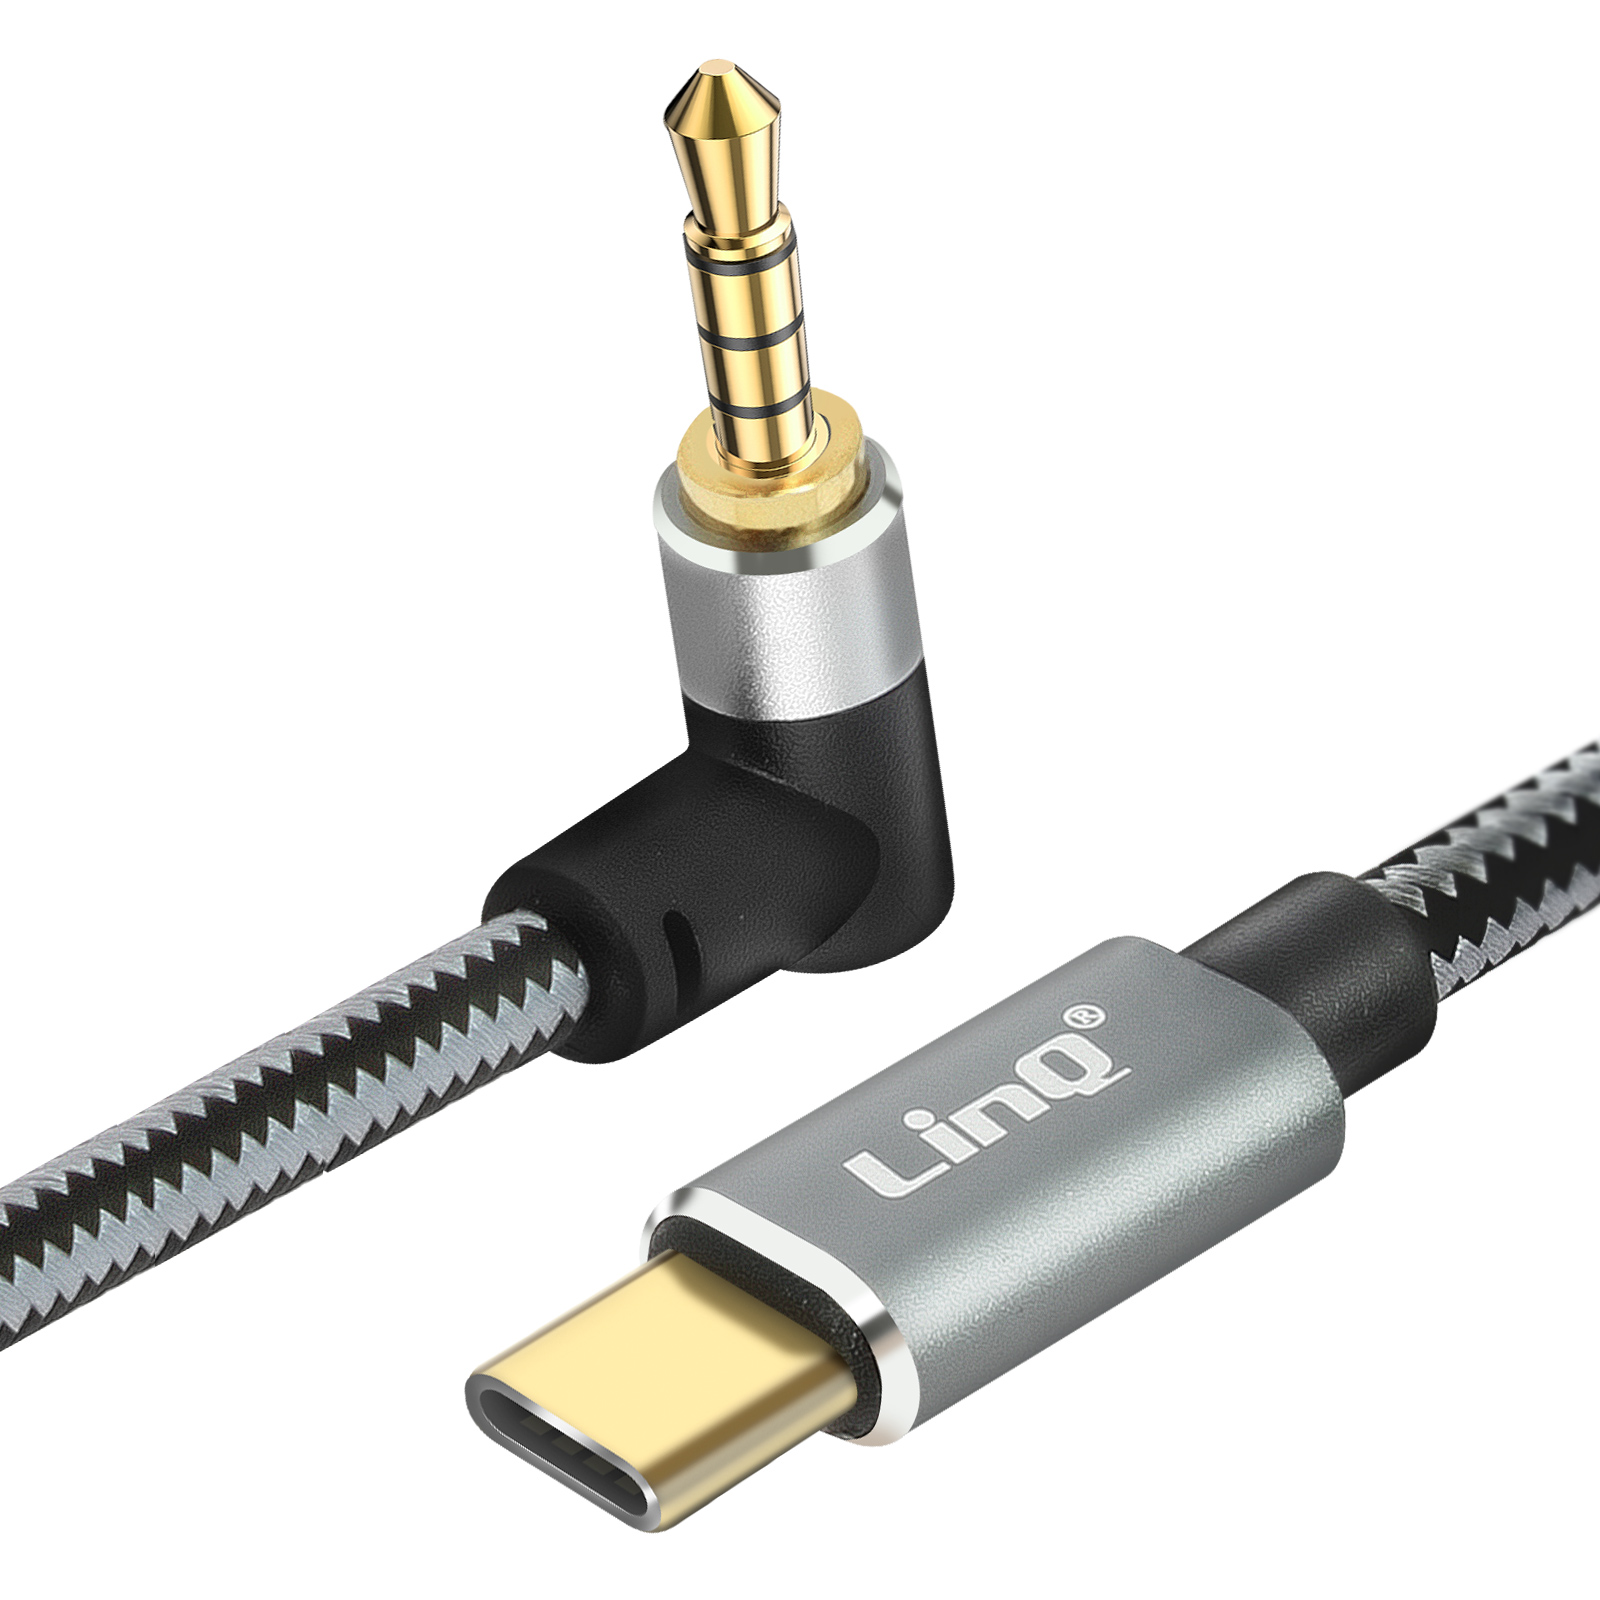 Audiokabel, / 3.5mm LINQ m 4-poliges USB-C Klinkenkabel, 1,5